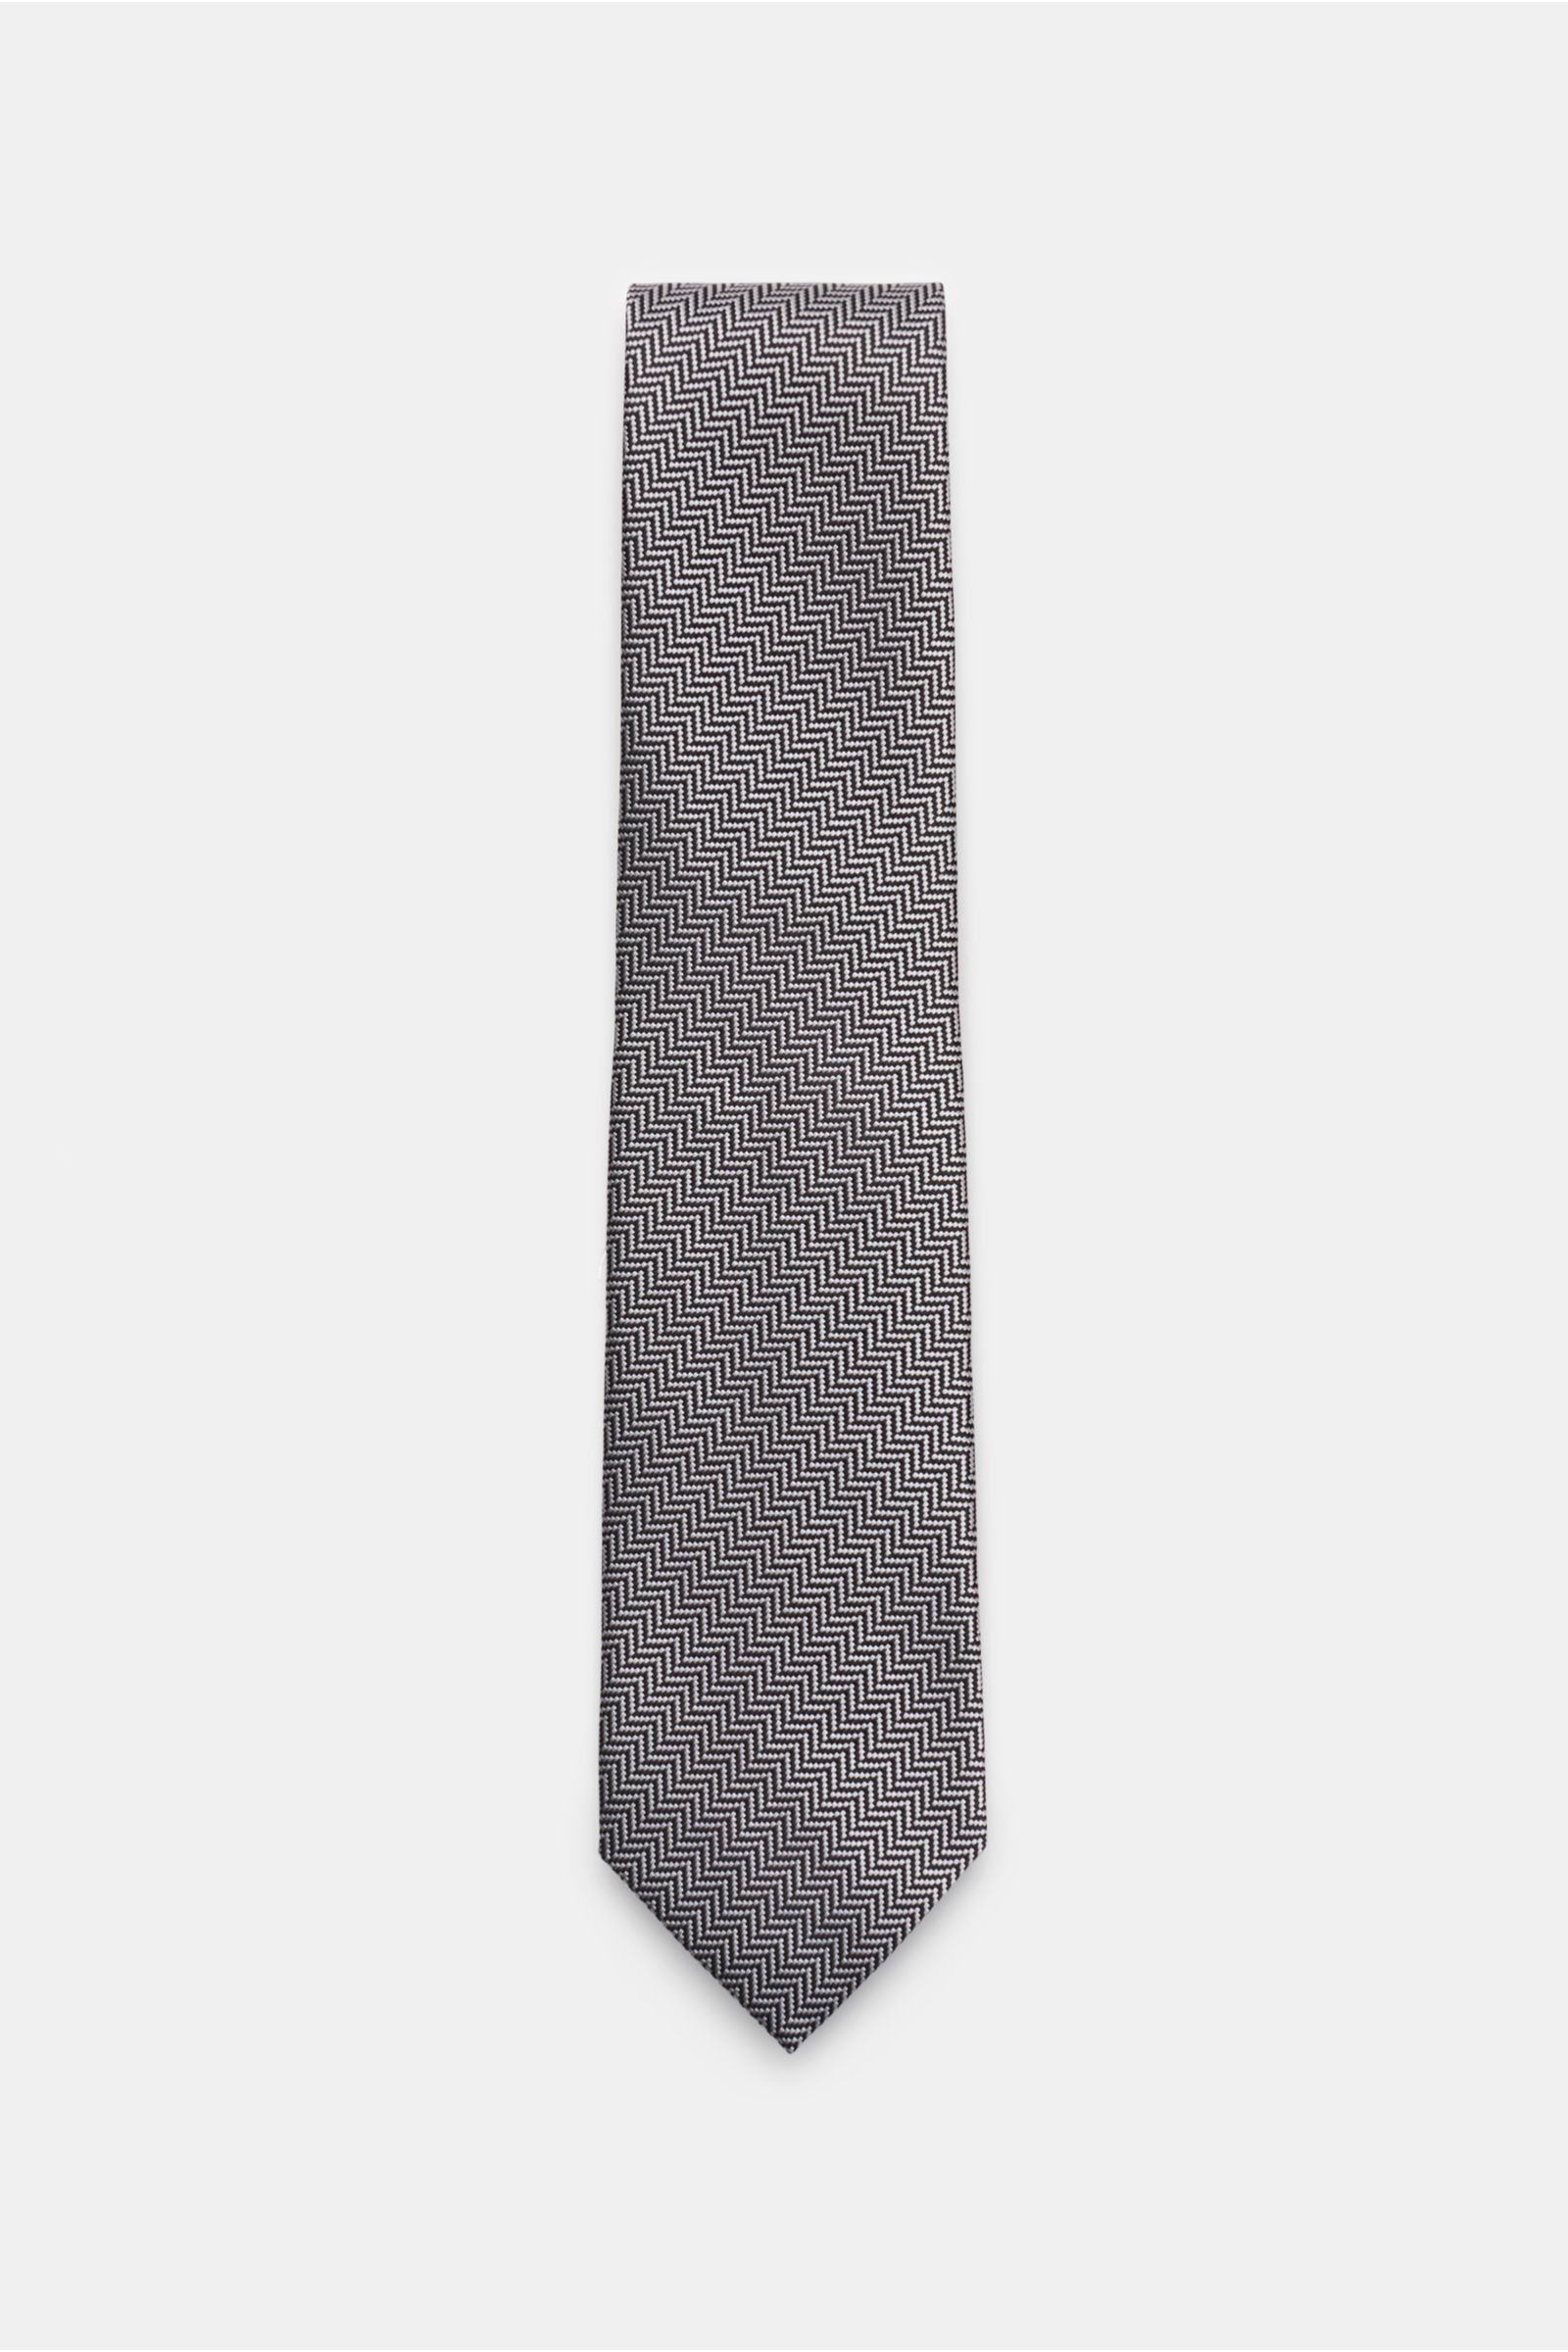 Silk tie grey/black patterned